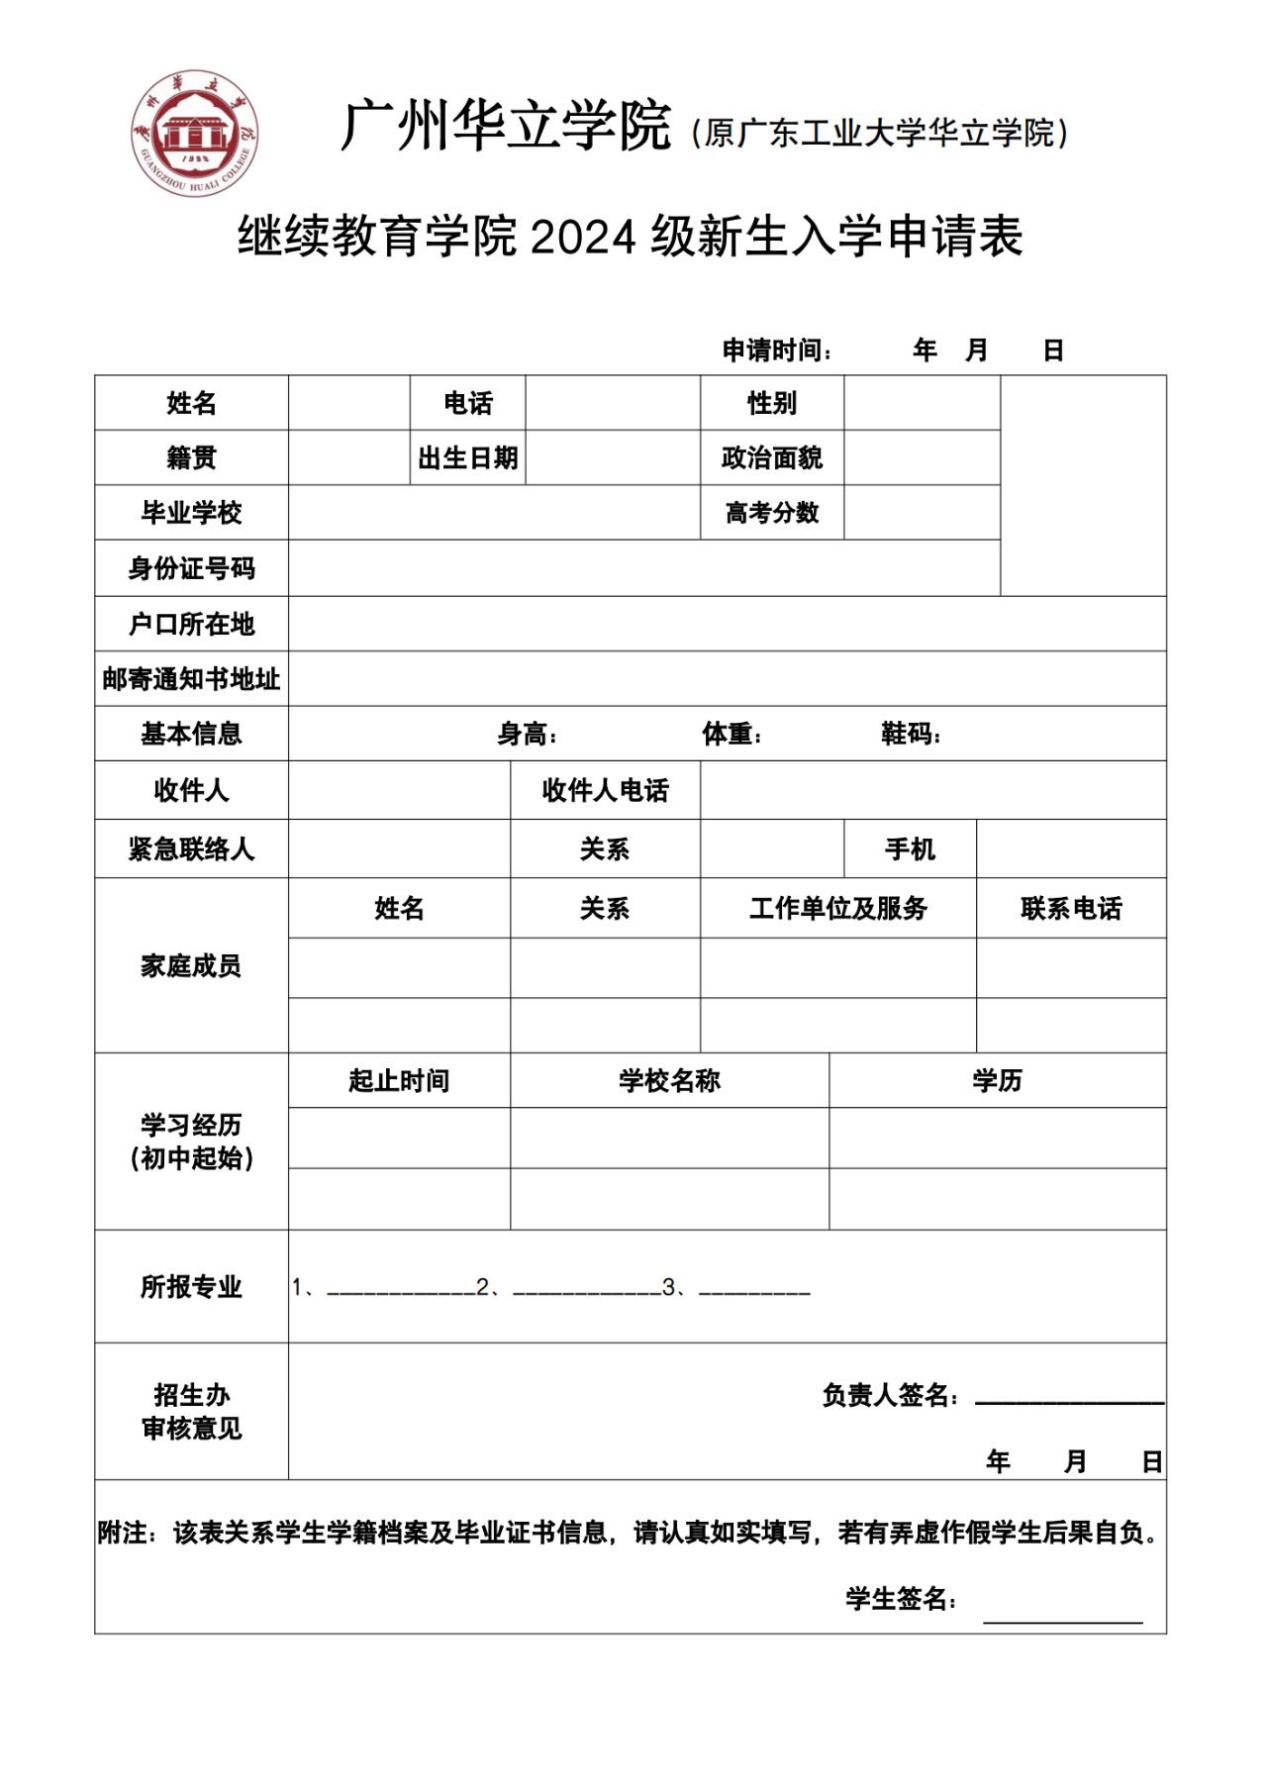 广州华立学院继续教育学院招生报名表图片